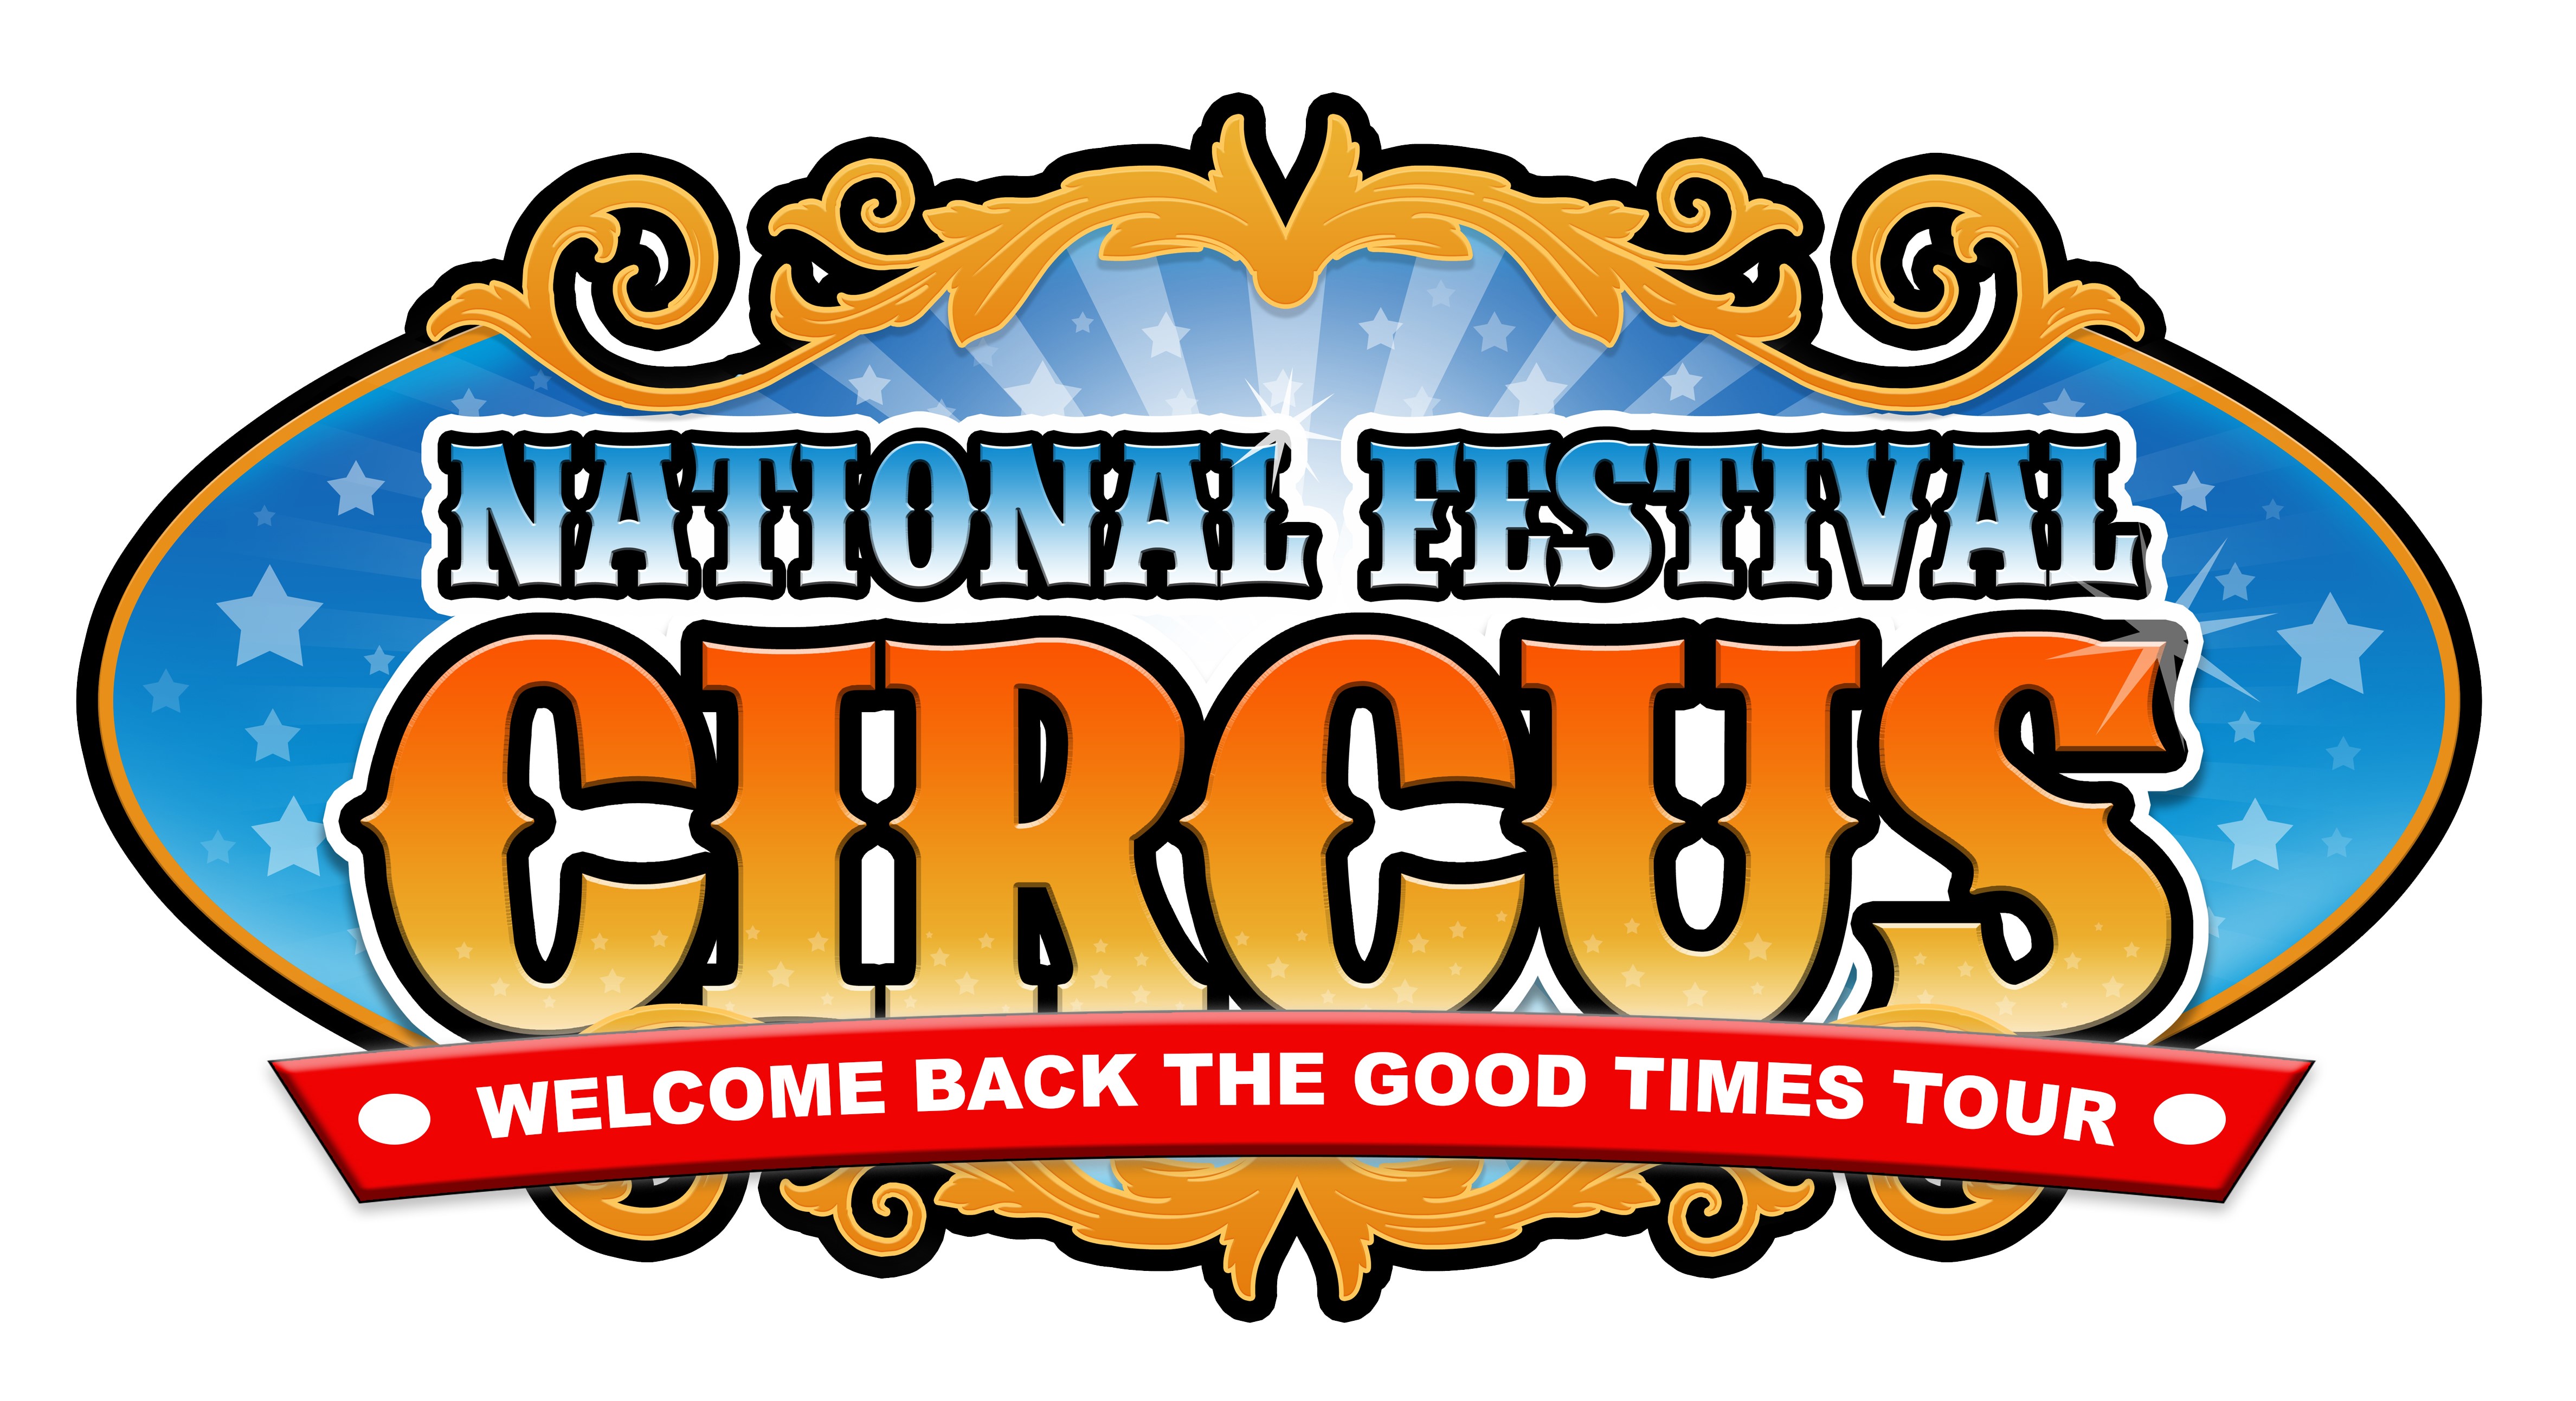 PTA+ Supplier - National Festival Circus